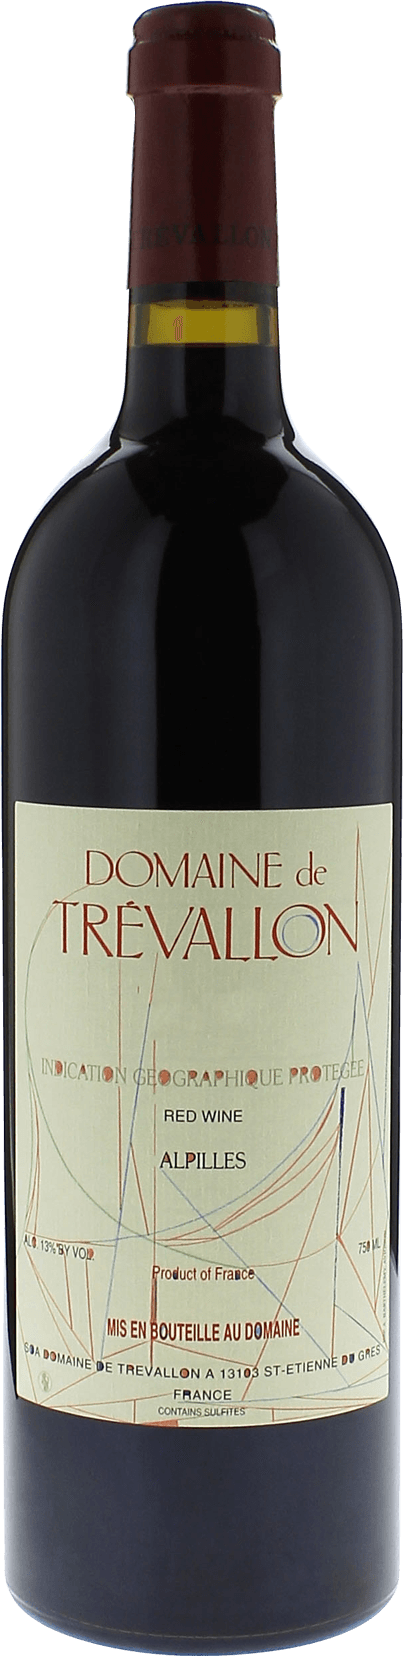 Domaine de trevallon rouge 2001  Vin de Pays, Provence